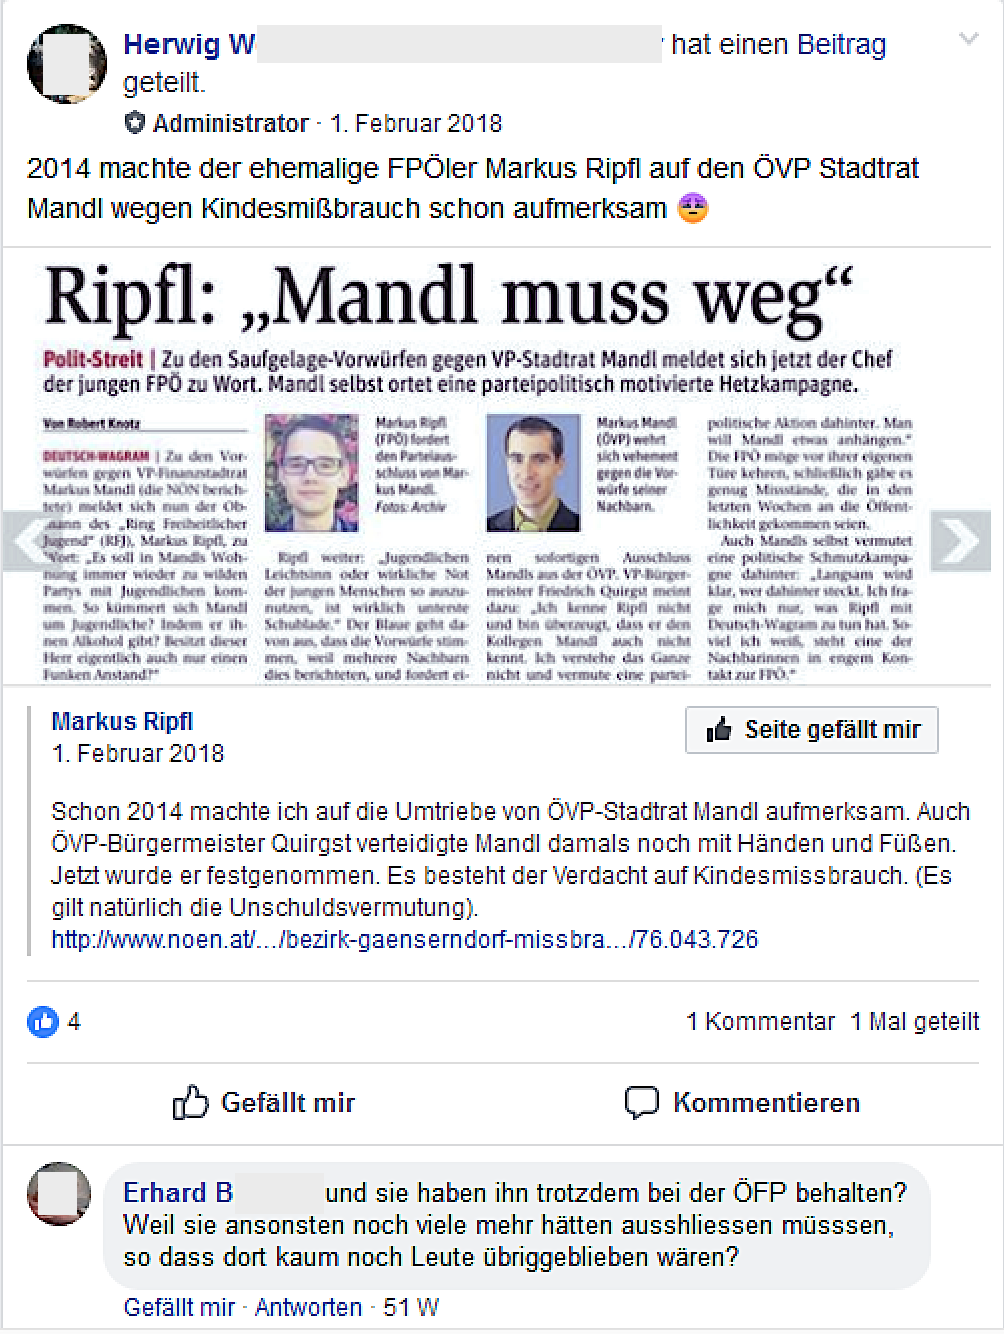 Ripfl-Posting wird nach seinem Parteiausschluss in der Gruppe "FPÖ Seitenadminitratoren" geteilt